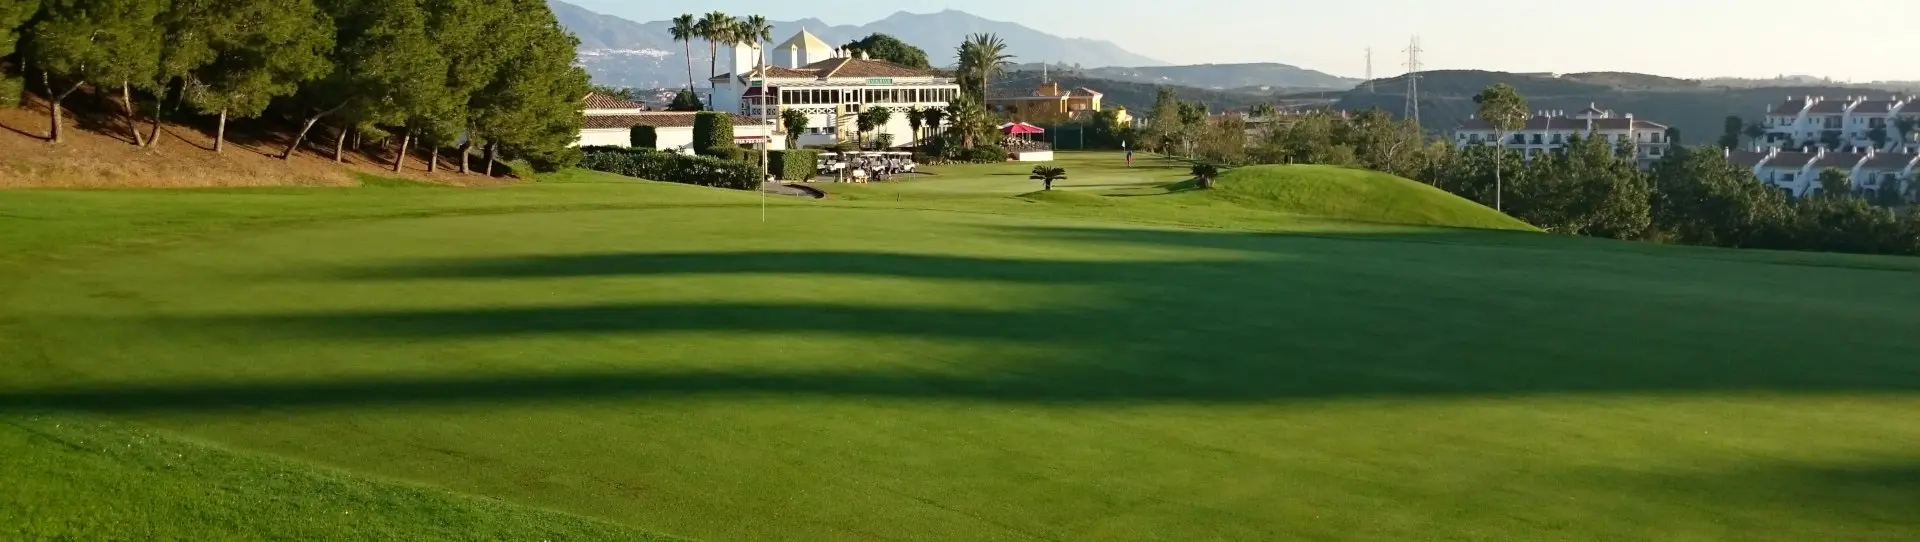 Spain golf courses - Miraflores Golf Club - Photo 1